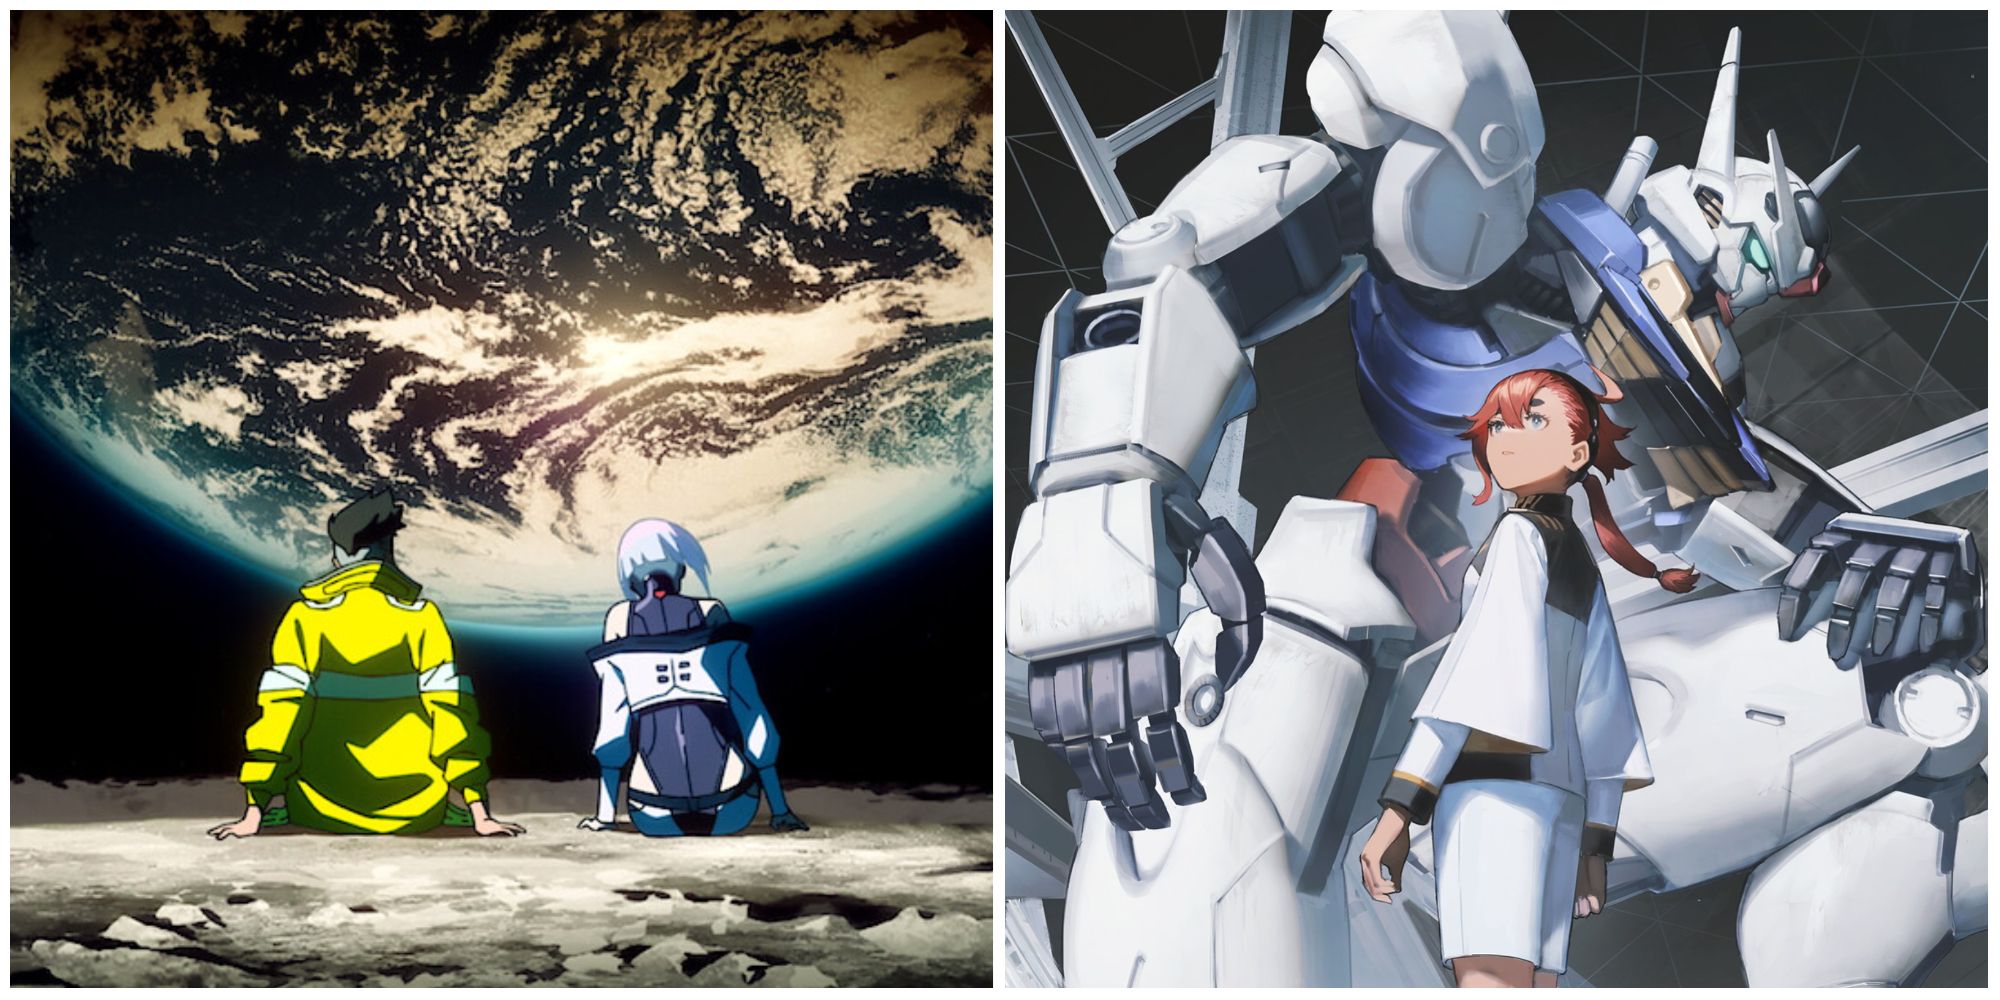 Anime Amazing Sci-fi art | Sci fi props, Sci fi art, Battle suit